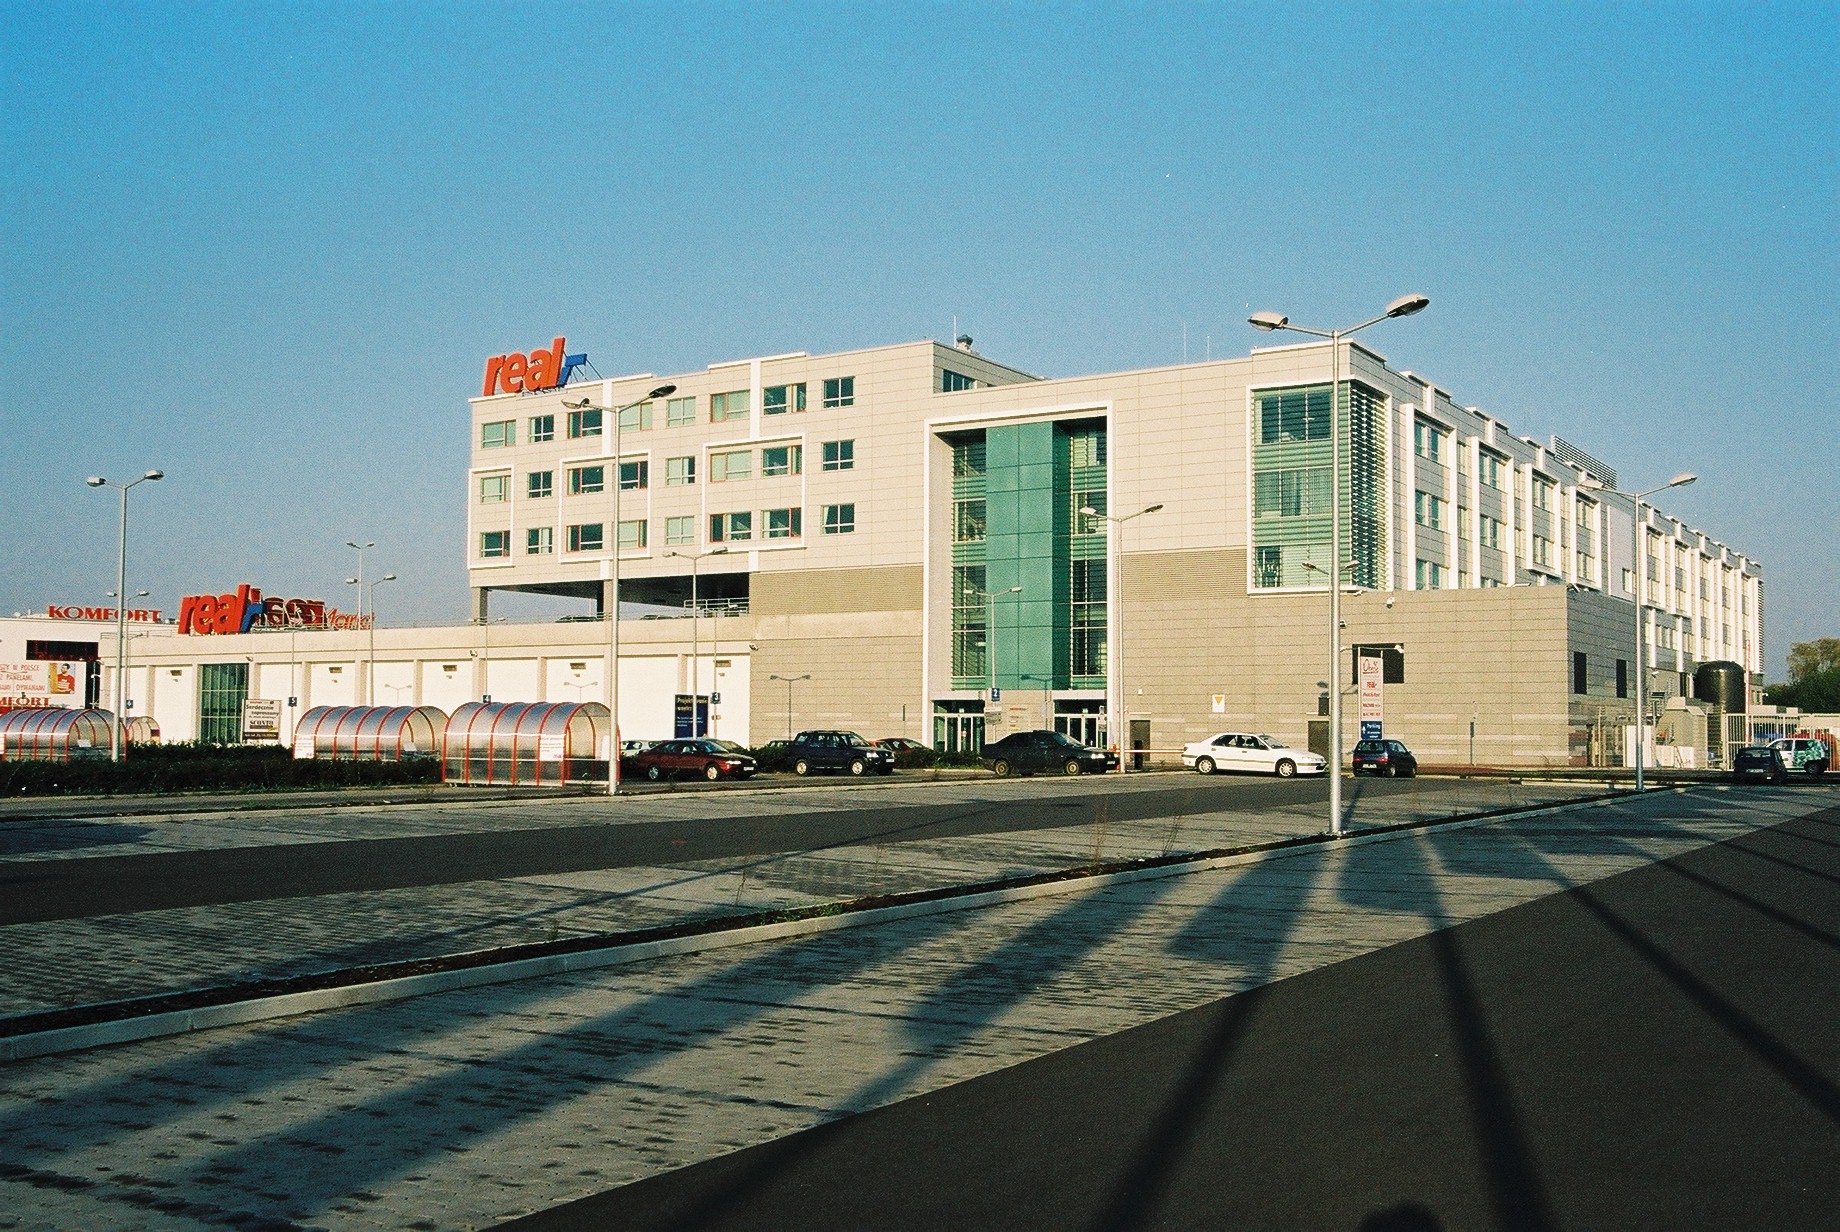 Hipermarket Real i Biurowiec Metro AG w Warszawie - Byggearbejde